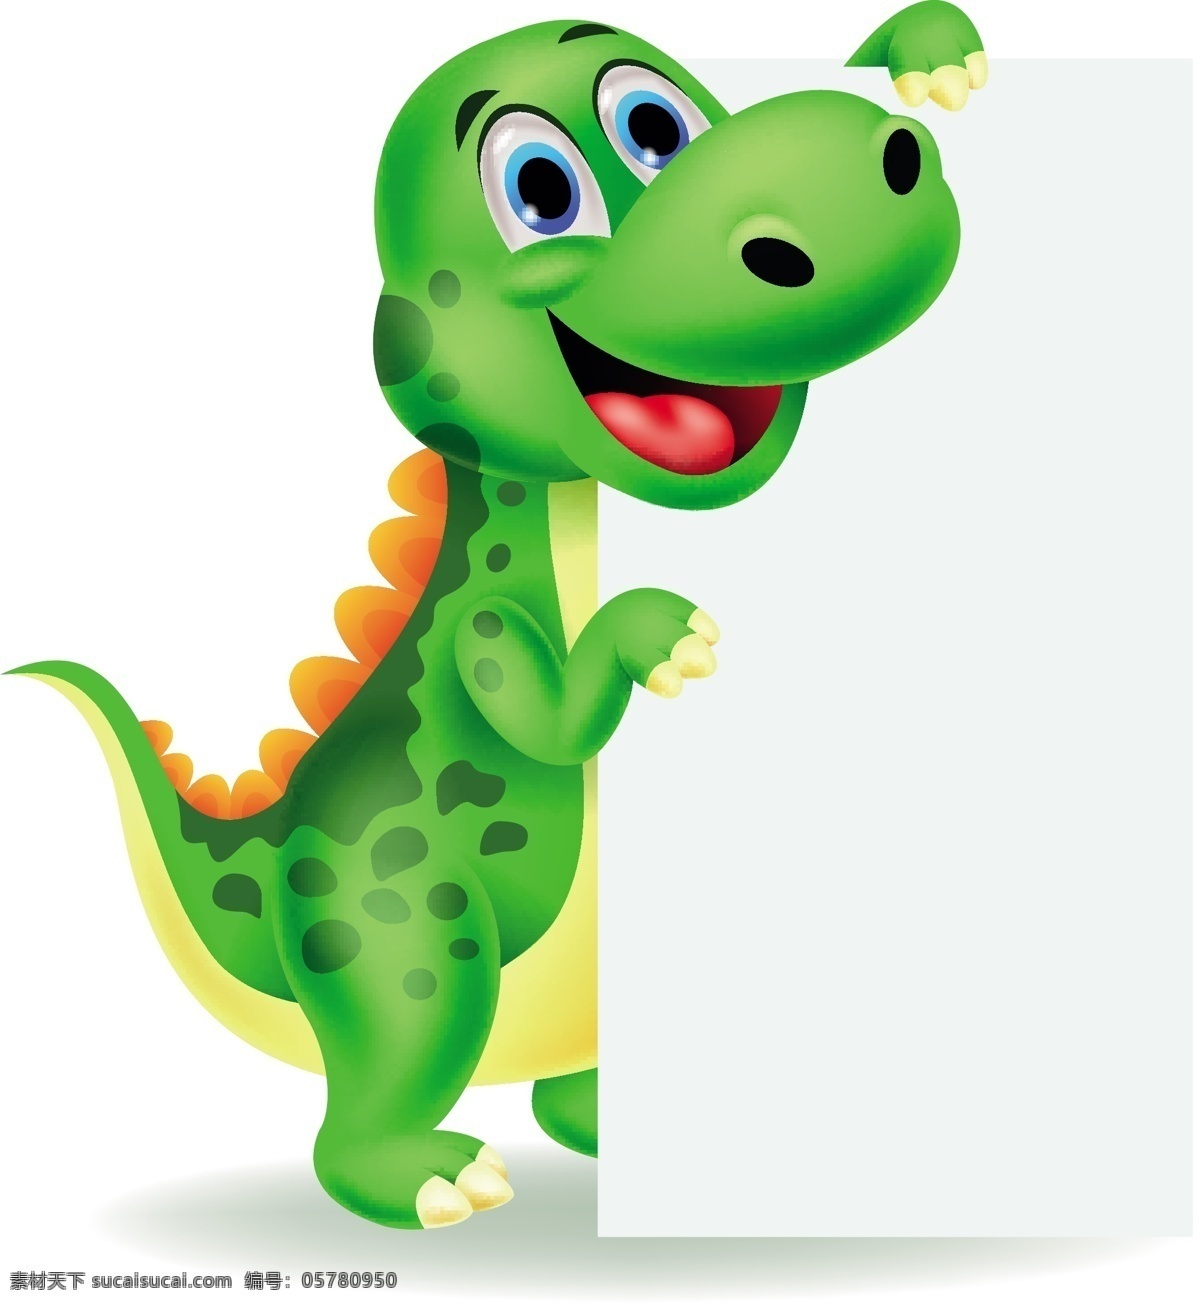 白板 恐龙 拿着 绿色 卡通恐龙 卡通动物 卡通形象 陆地动物 生物世界 矢量素材 白色